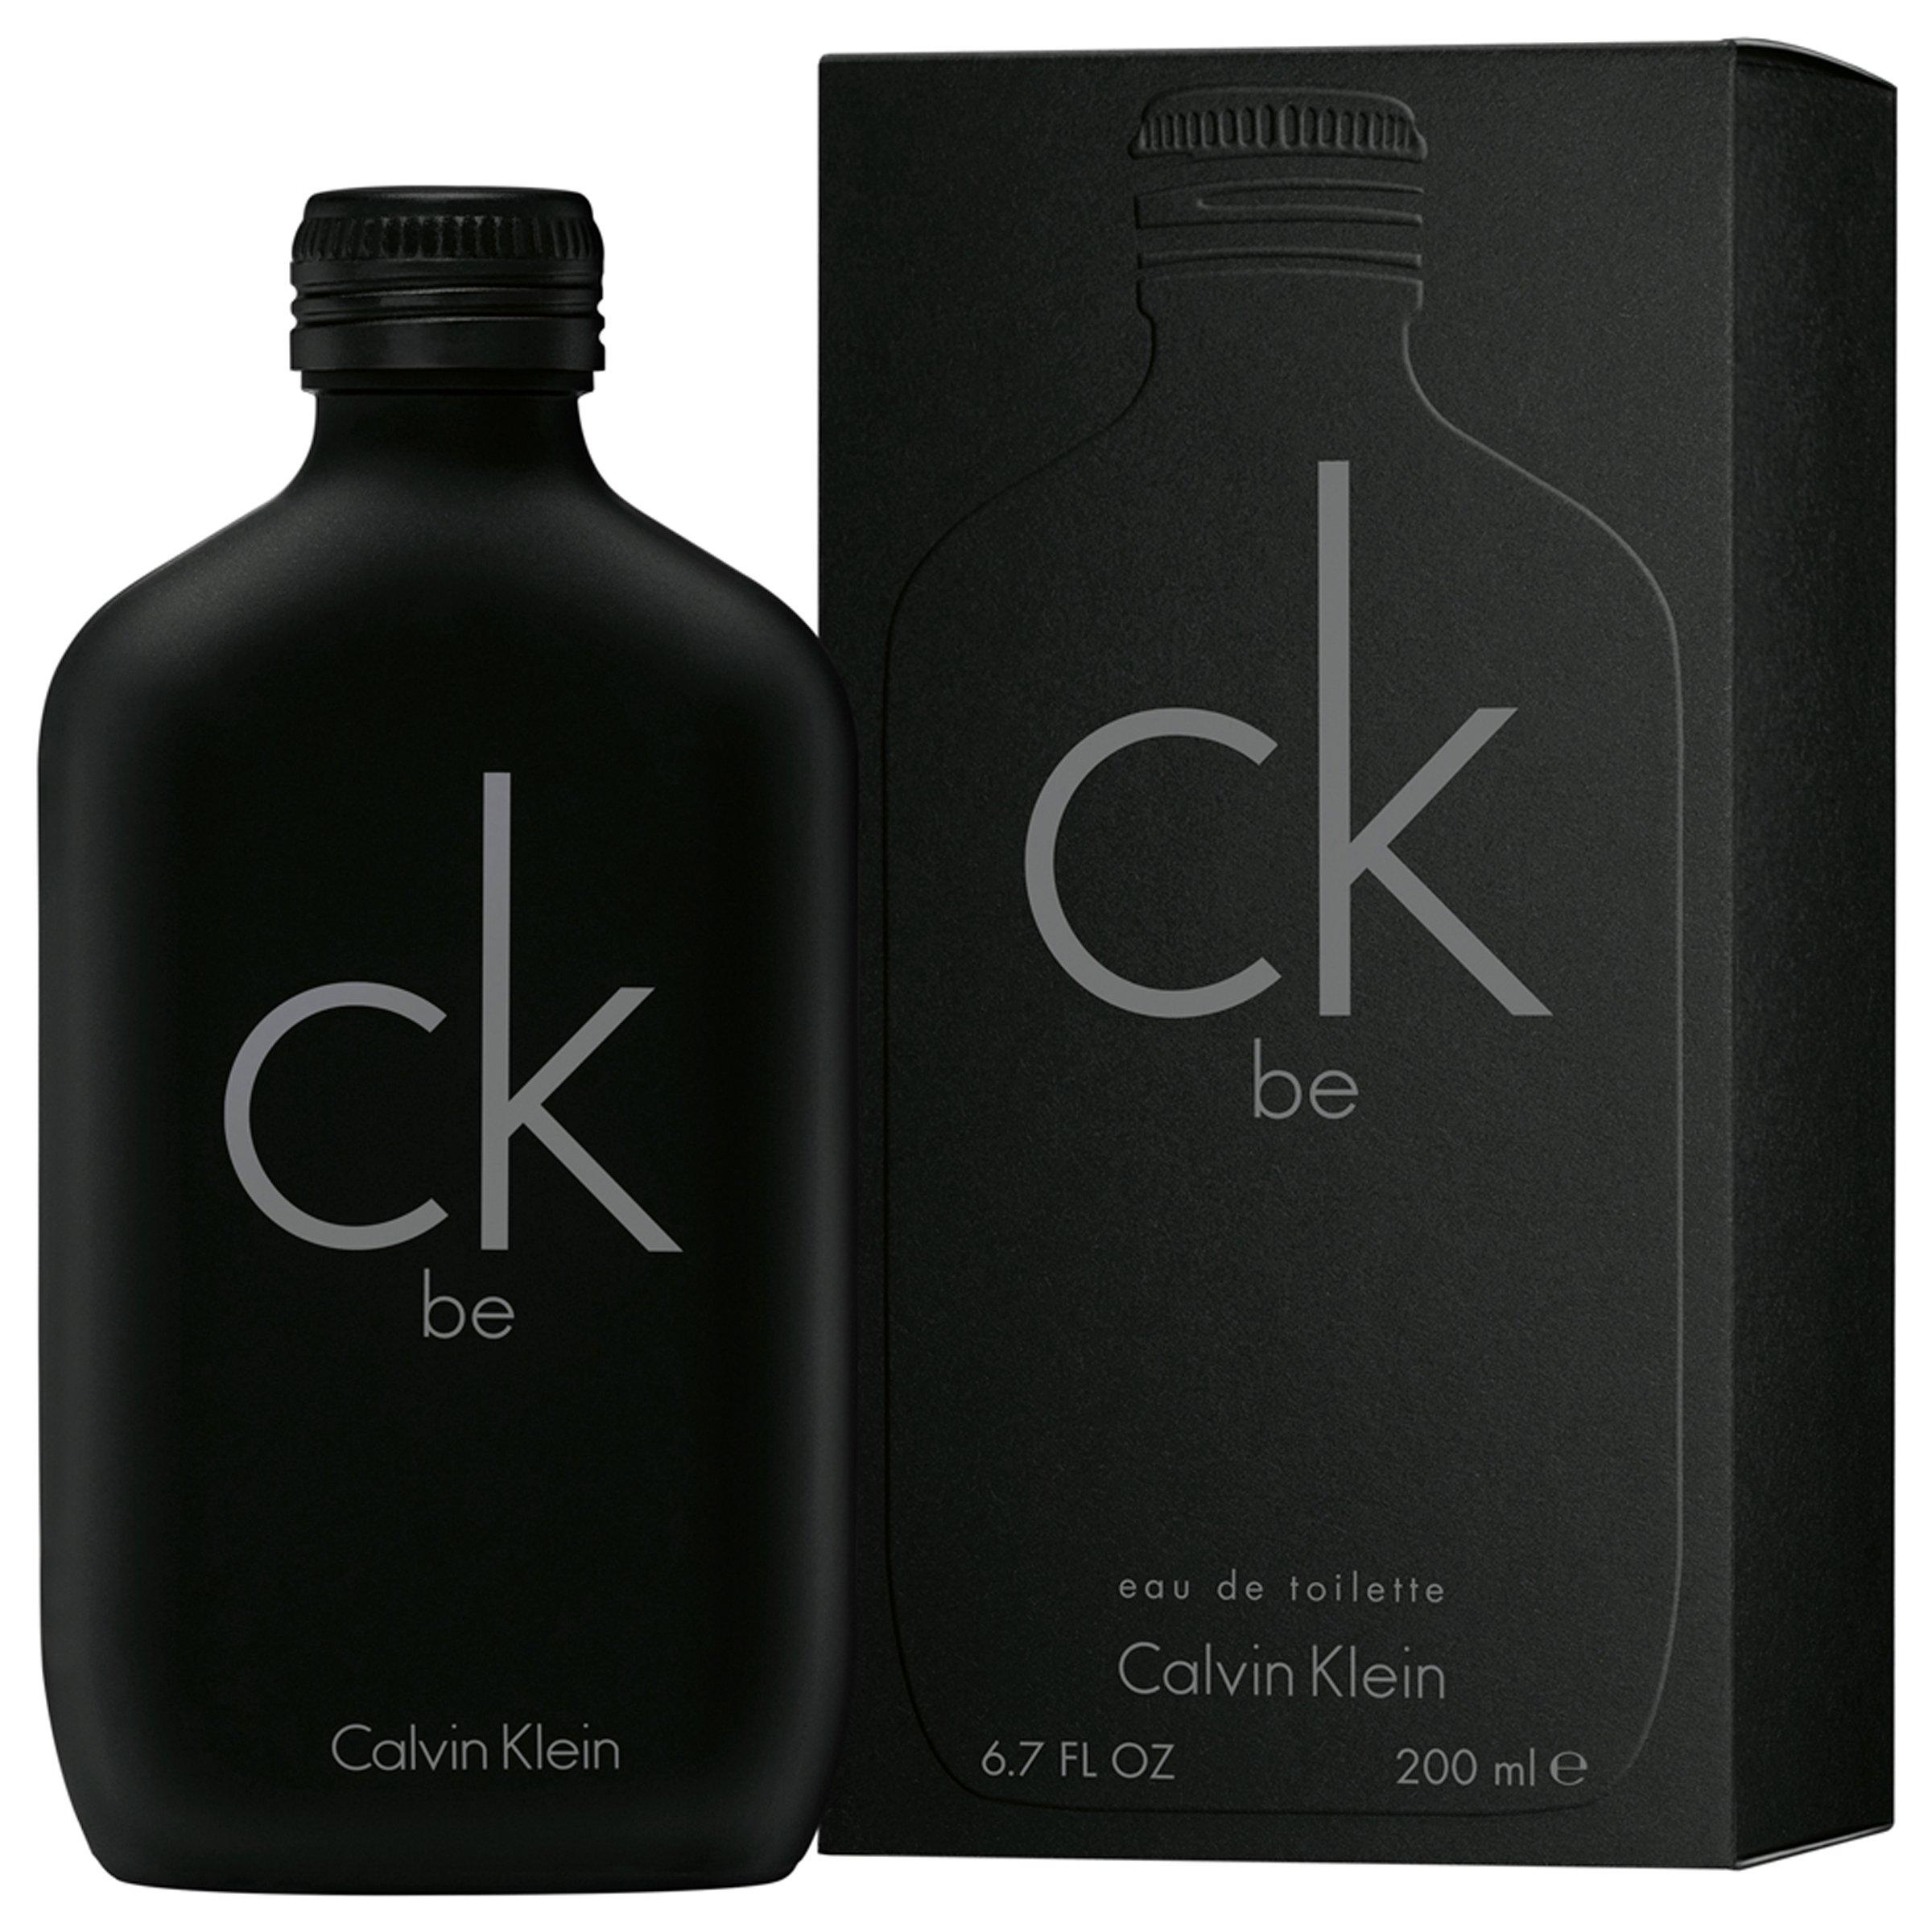 Buy Calvin Klein CK Be EDT Online | Truworths